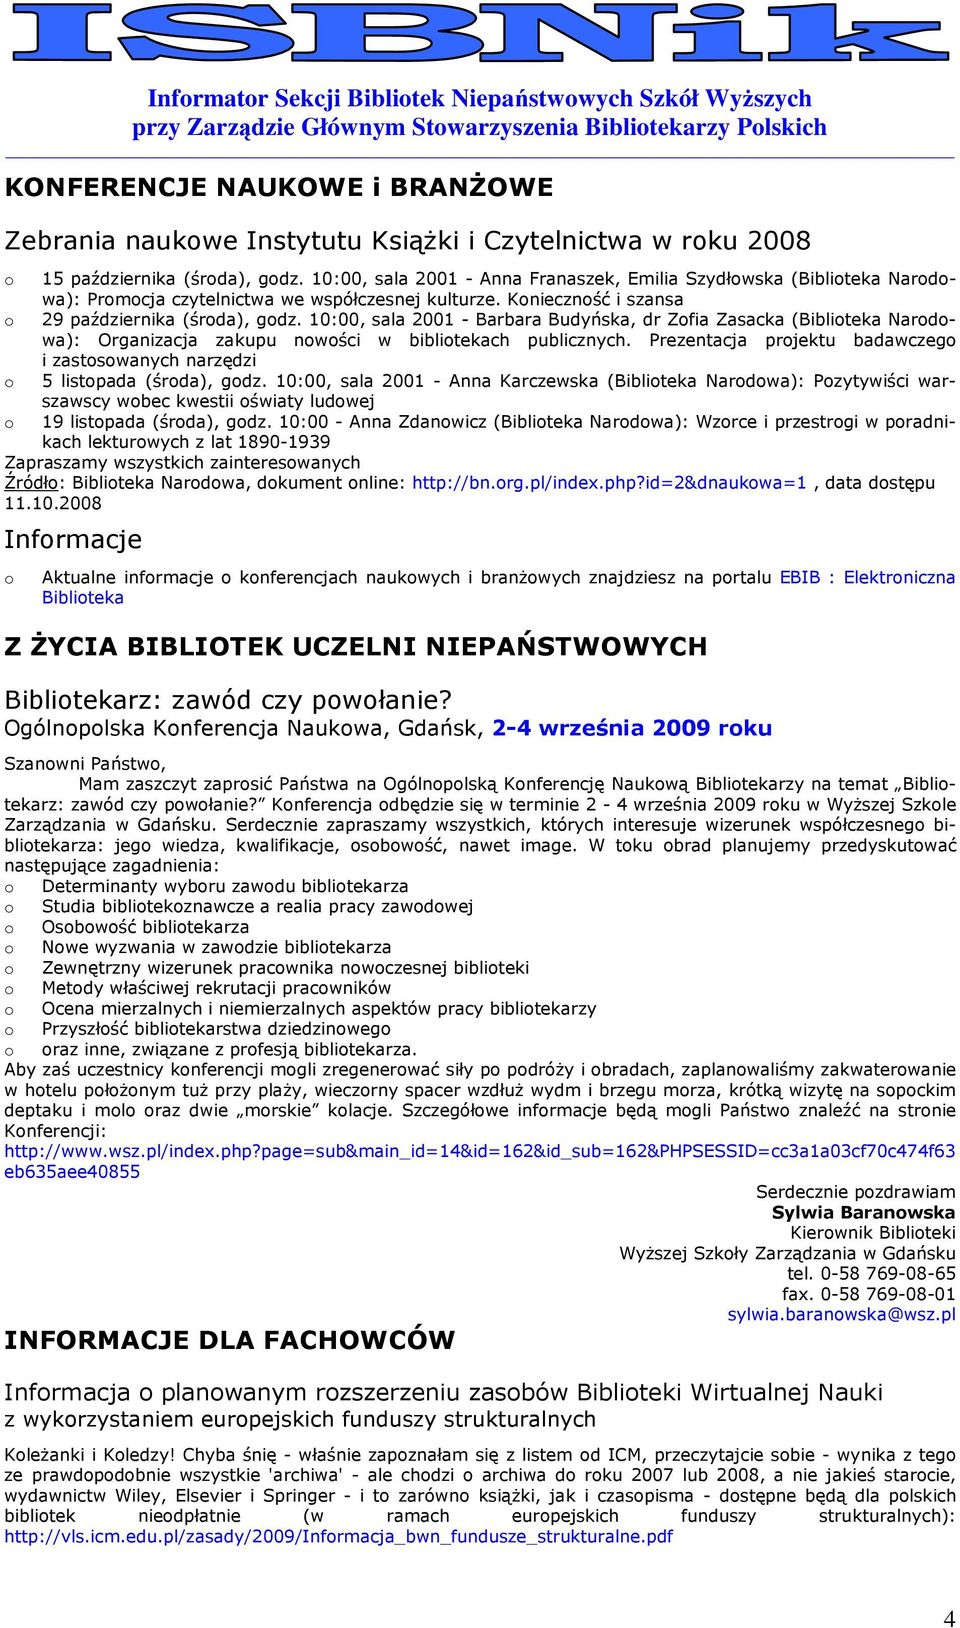 10:00, sala 2001 - Barbara Budyńska, dr Zfia Zasacka (Bibliteka Nardwa): Organizacja zakupu nwści w biblitekach publicznych.